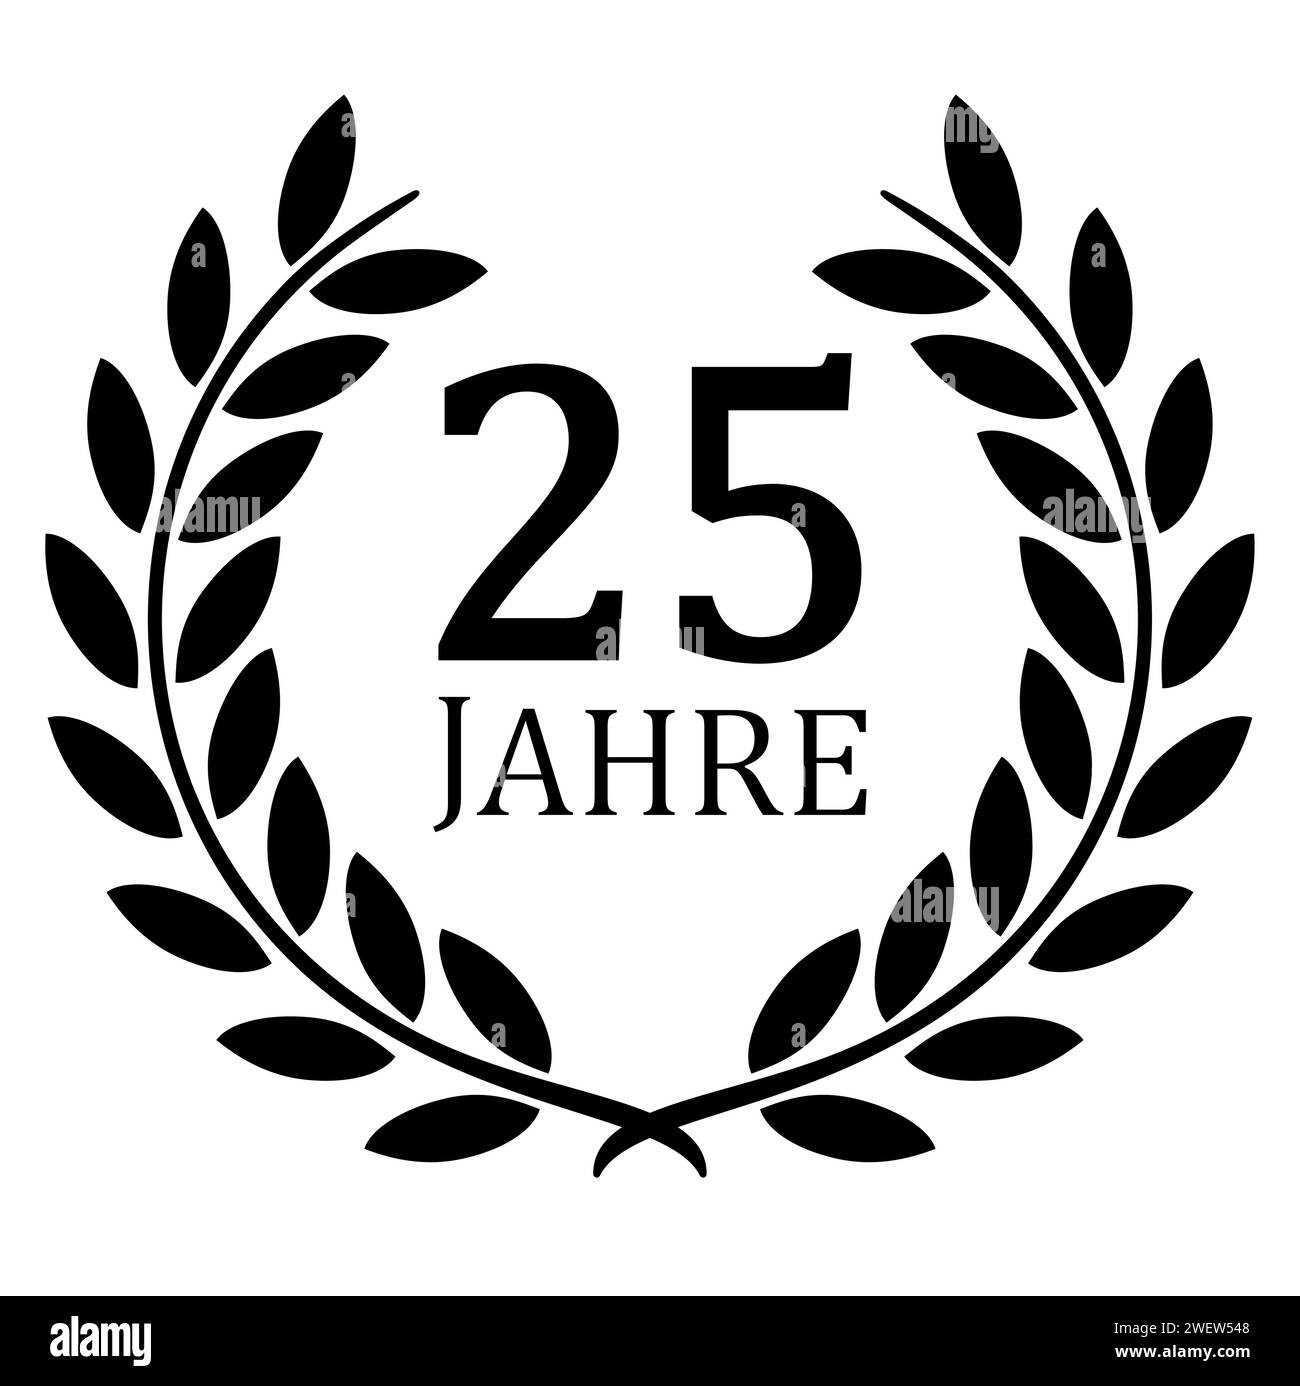 fichier vectoriel eps avec couronne de laurier noire sur fond blanc pour succès ou jubilé ferme avec texte 25 ans (texte allemand) Illustration de Vecteur